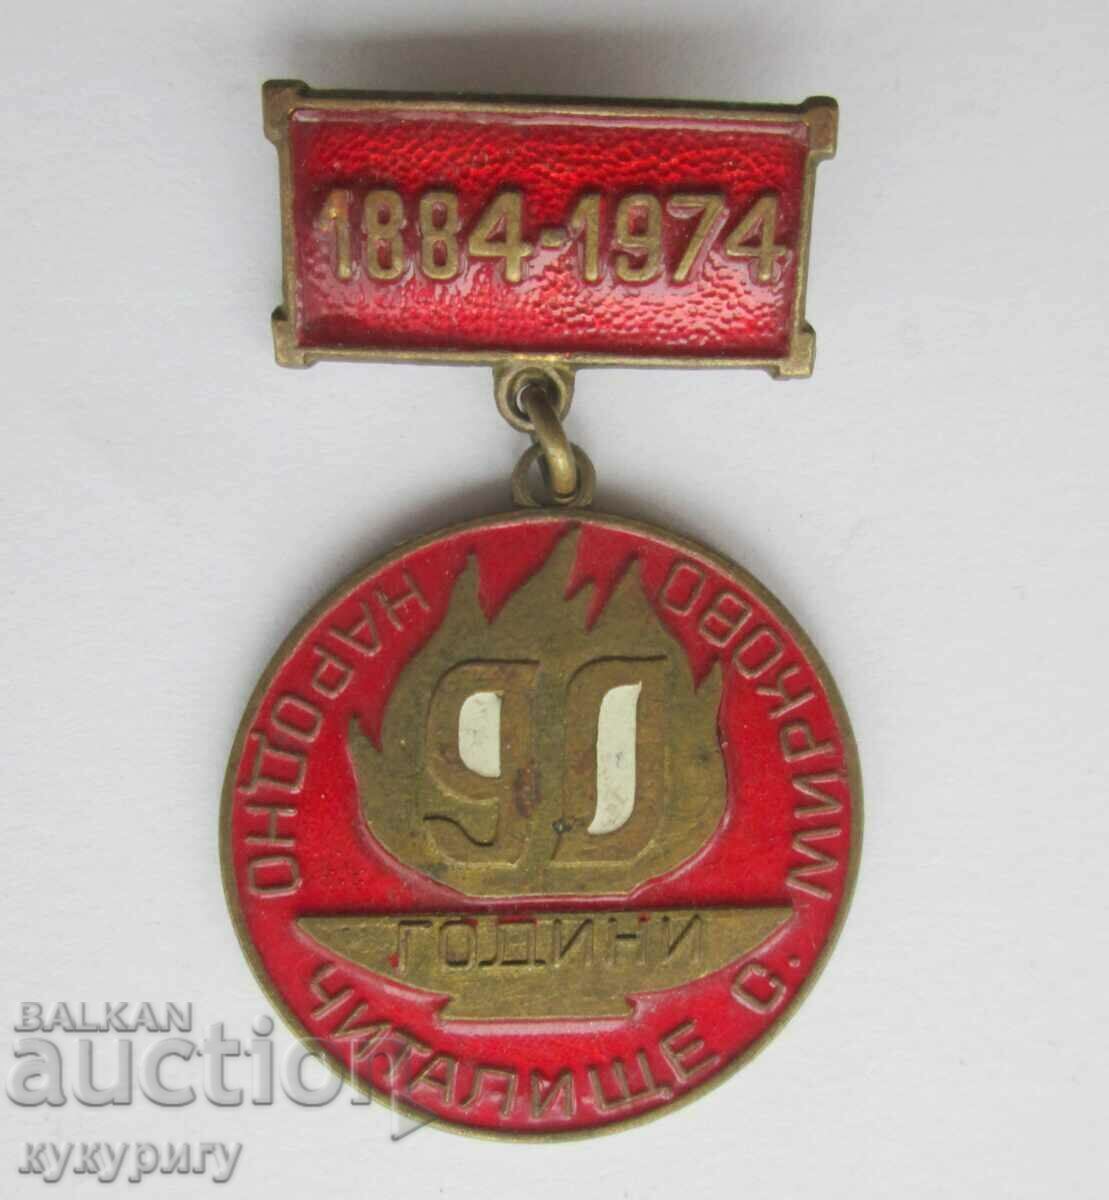 Veche insignă cu medalie Centrul comunitar al Poporului Mirkovo 1884-1974